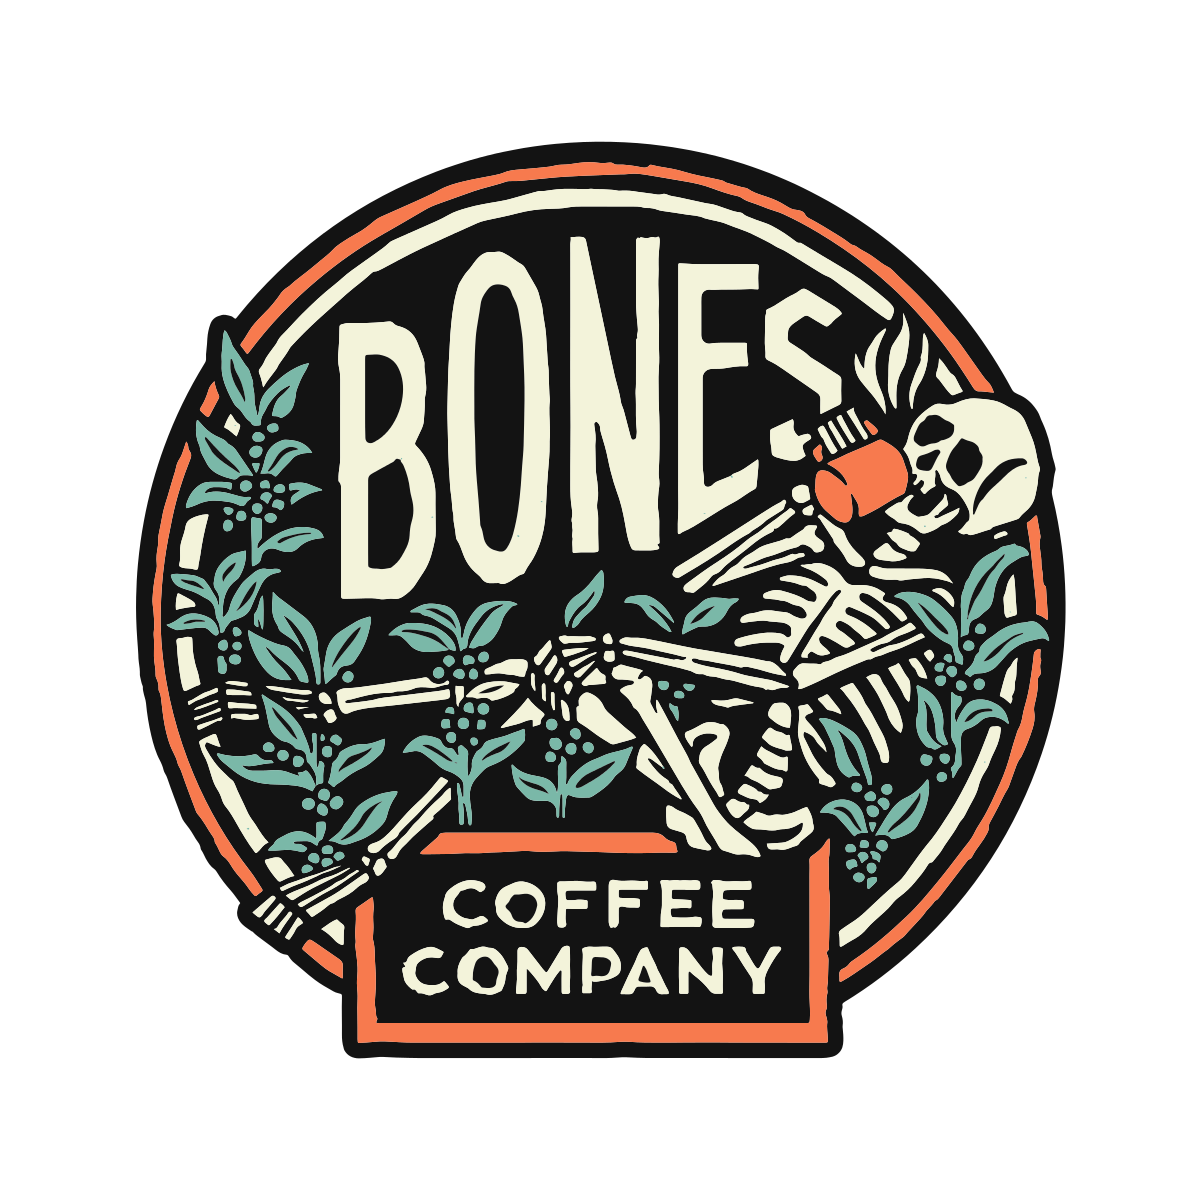 https://www.bonescoffee.com/cdn/shop/t/155/assets/bones-logo.png?v=27184307149392563951701804412